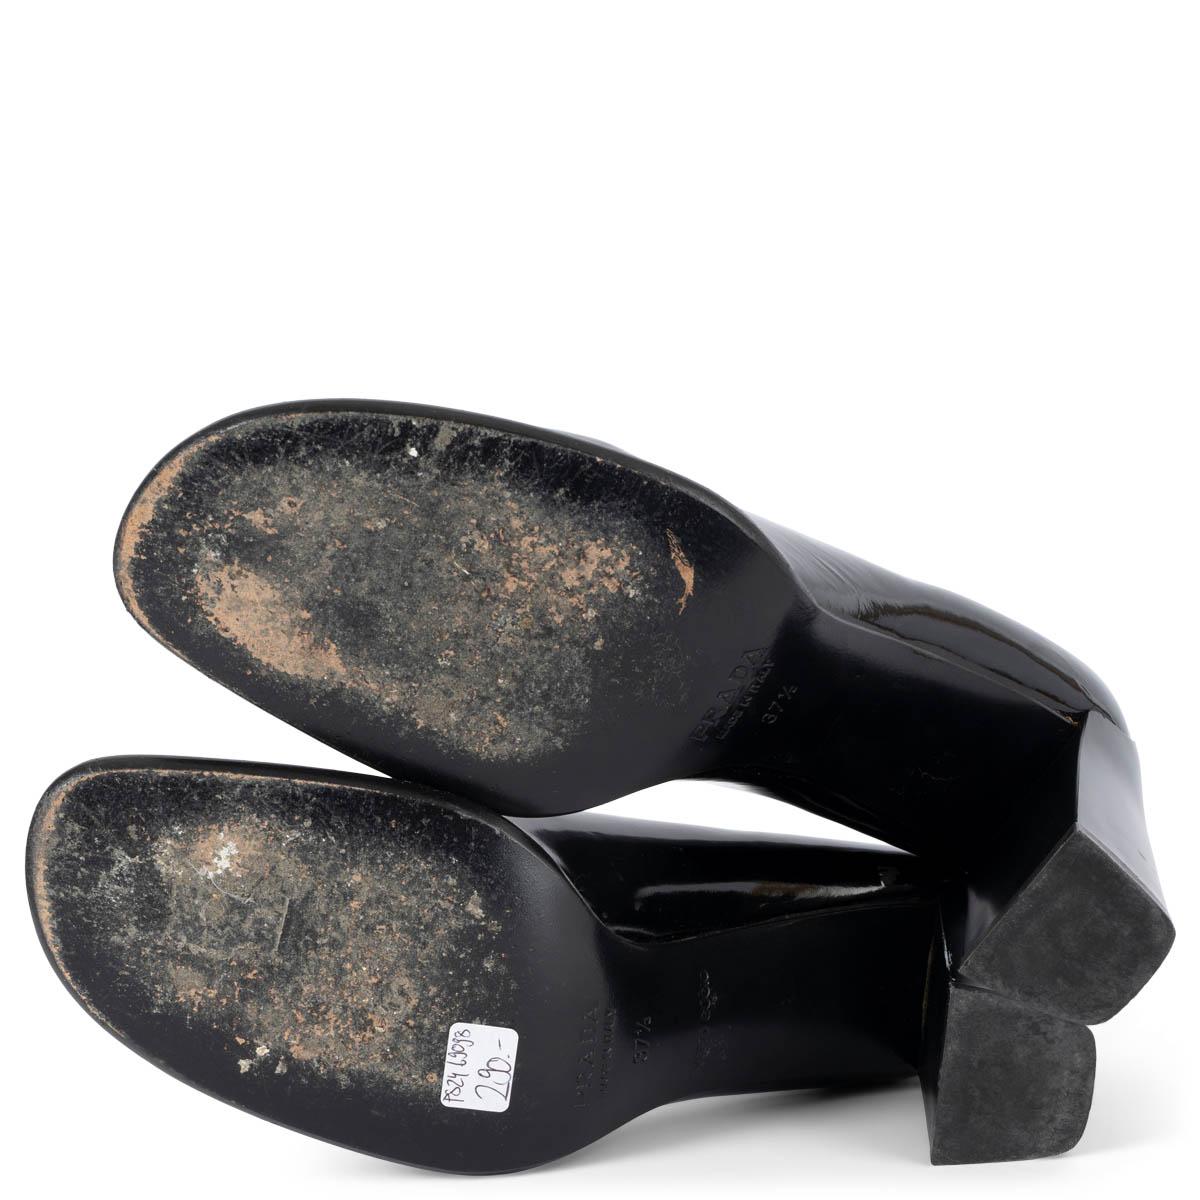 PRADA black patent leather VINTAGE Pumps Shoes 37.5 5